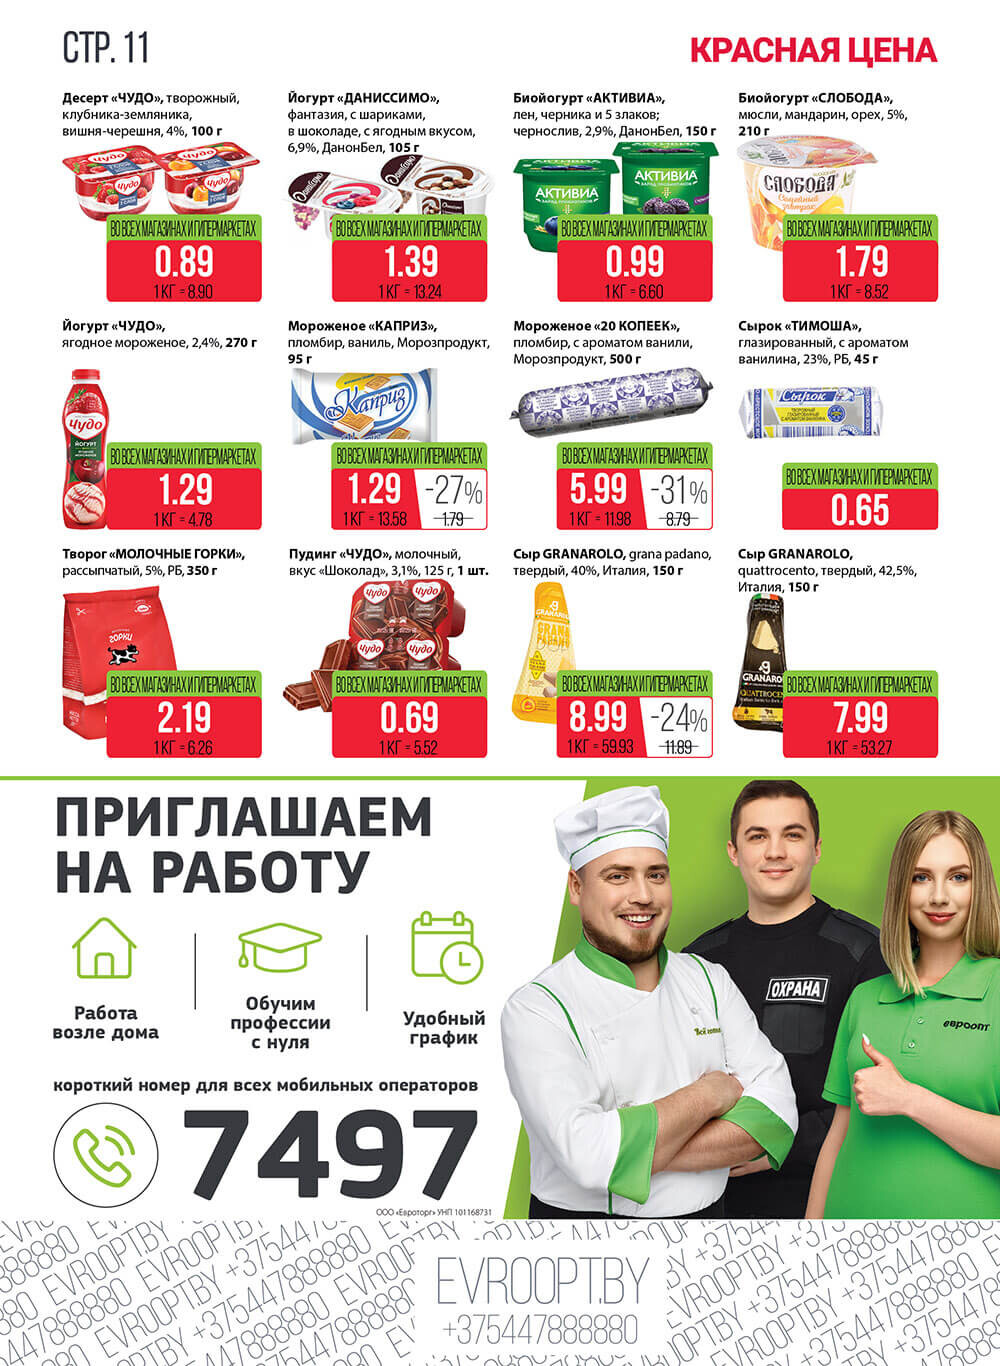 Каталог (листовка) акции "Красная цена" в Евроопт с 7 по 20 февраля 2022 года